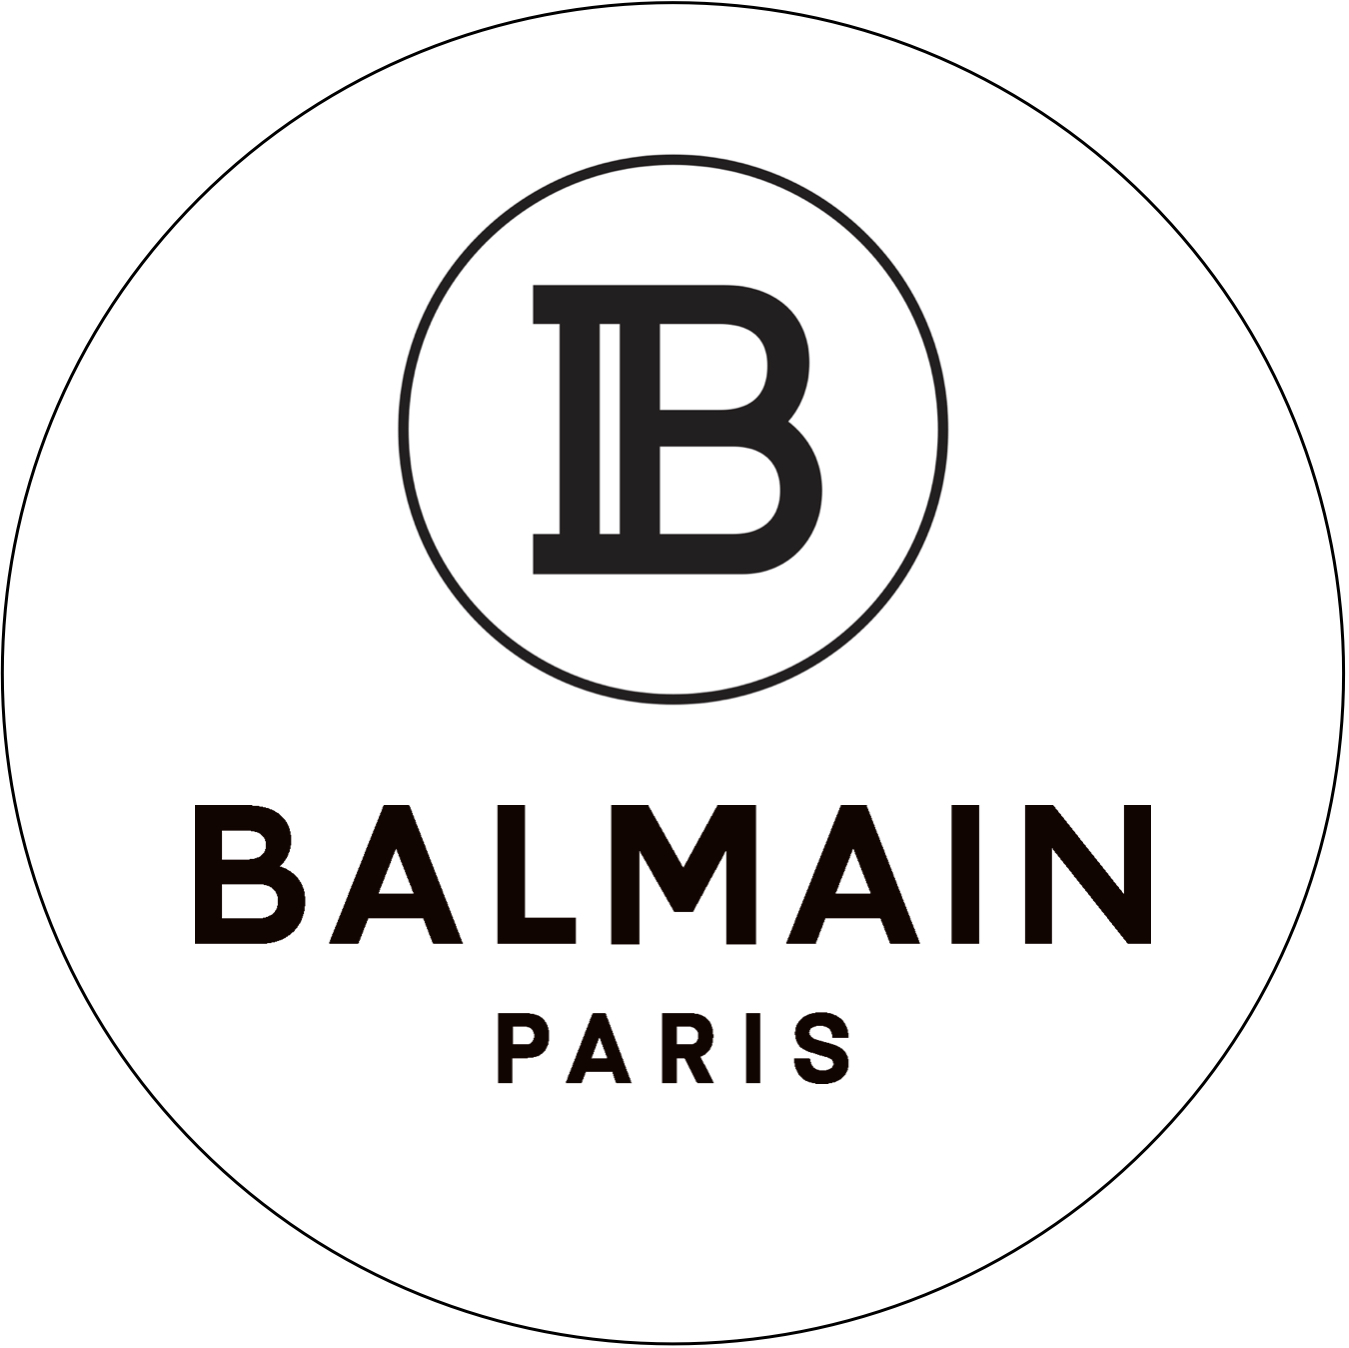 BALMAIN Paris